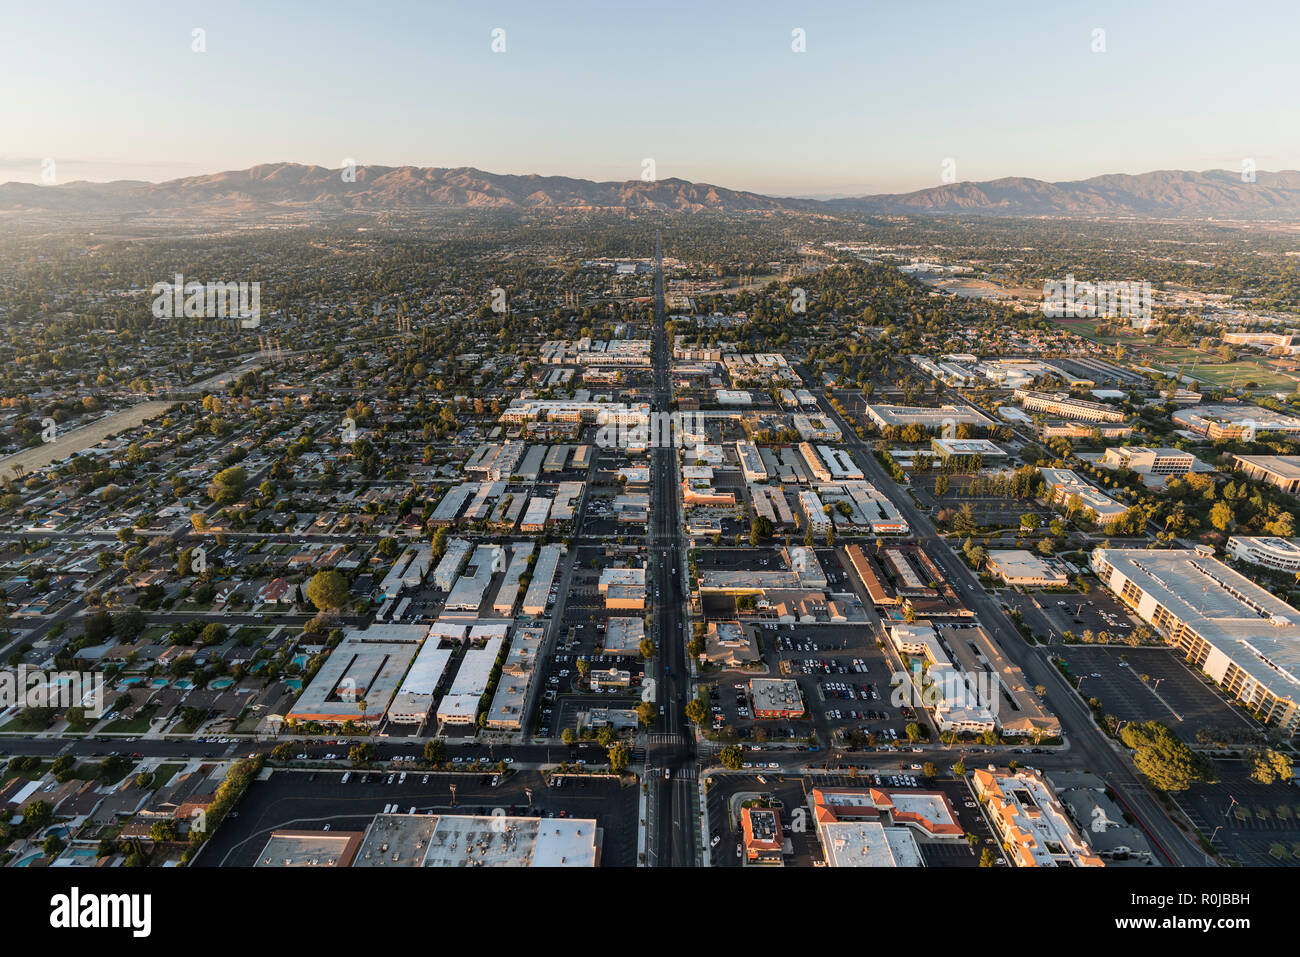 Los Angeles, Californie, USA - 21 octobre 2018 : Vue aérienne de Reseda Blvd et de Northridge dans la vallée de San Fernando de Los Angeles, Californie Banque D'Images